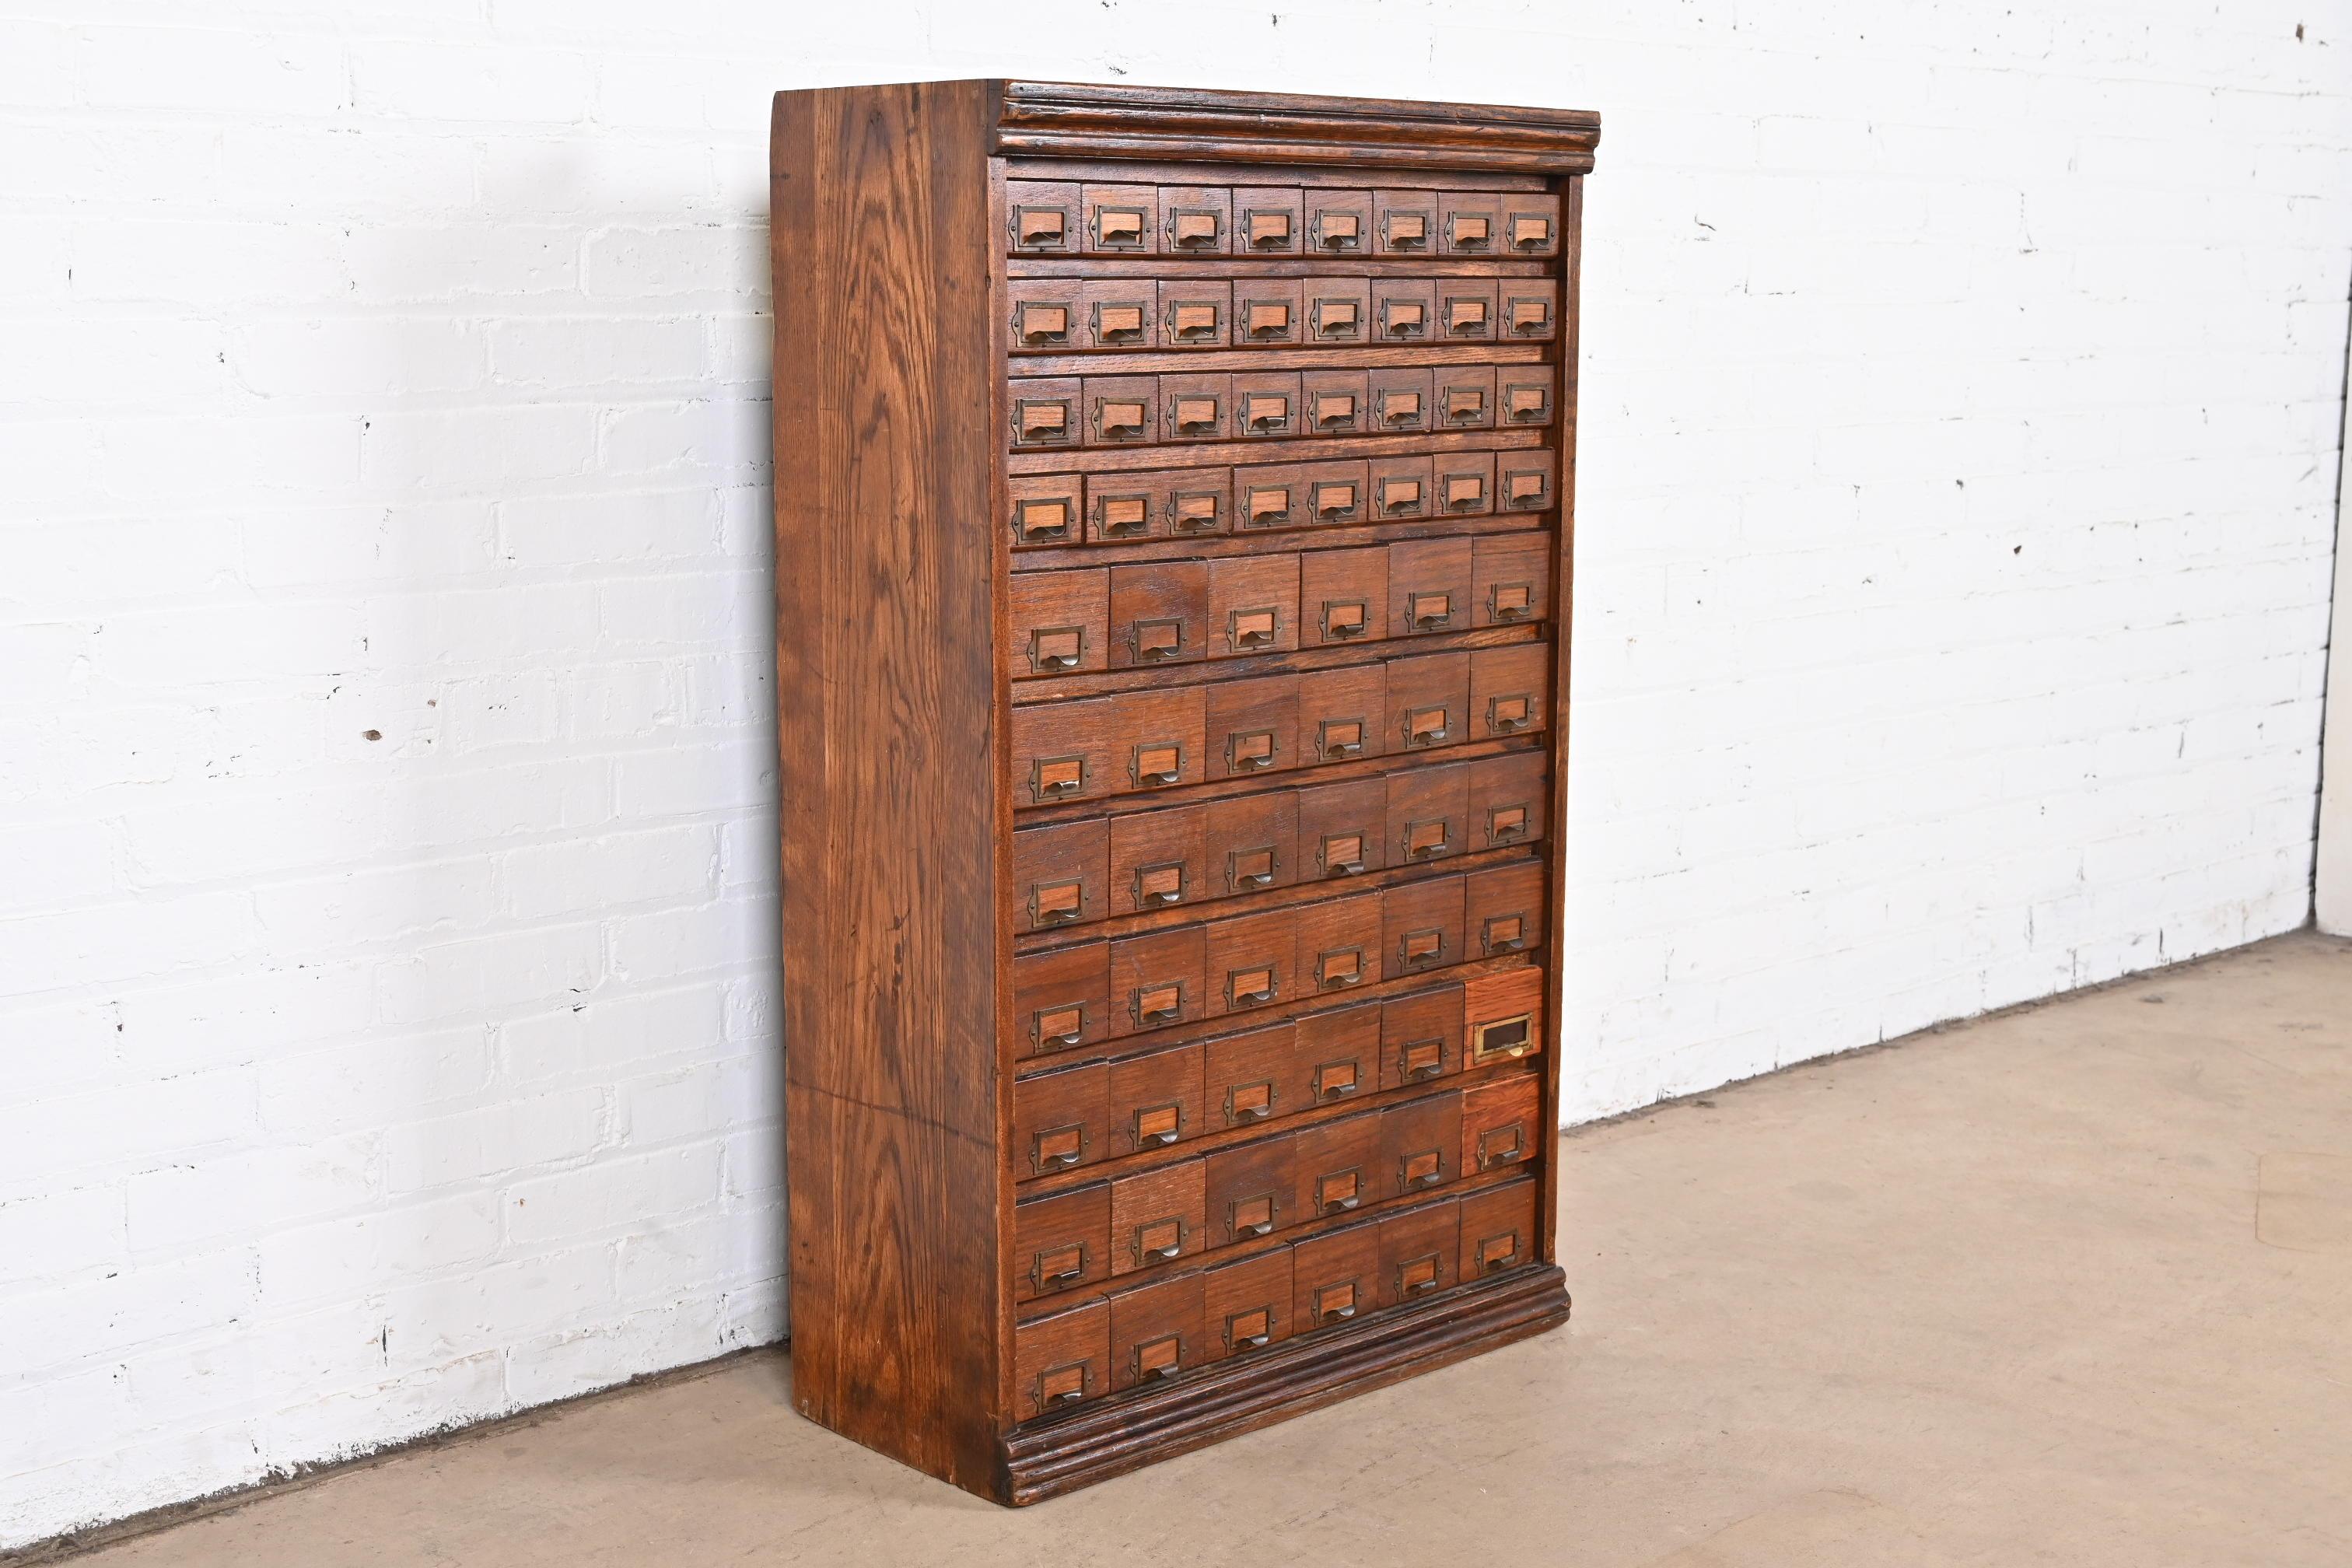 Rare classeur à fiches ou armoire à pièces industrielles d'époque Arte Antiques

États-Unis, vers 1900

Chêne massif, avec quincaillerie en laiton et intérieurs de tiroirs en métal.

Dimensions : 25,5 